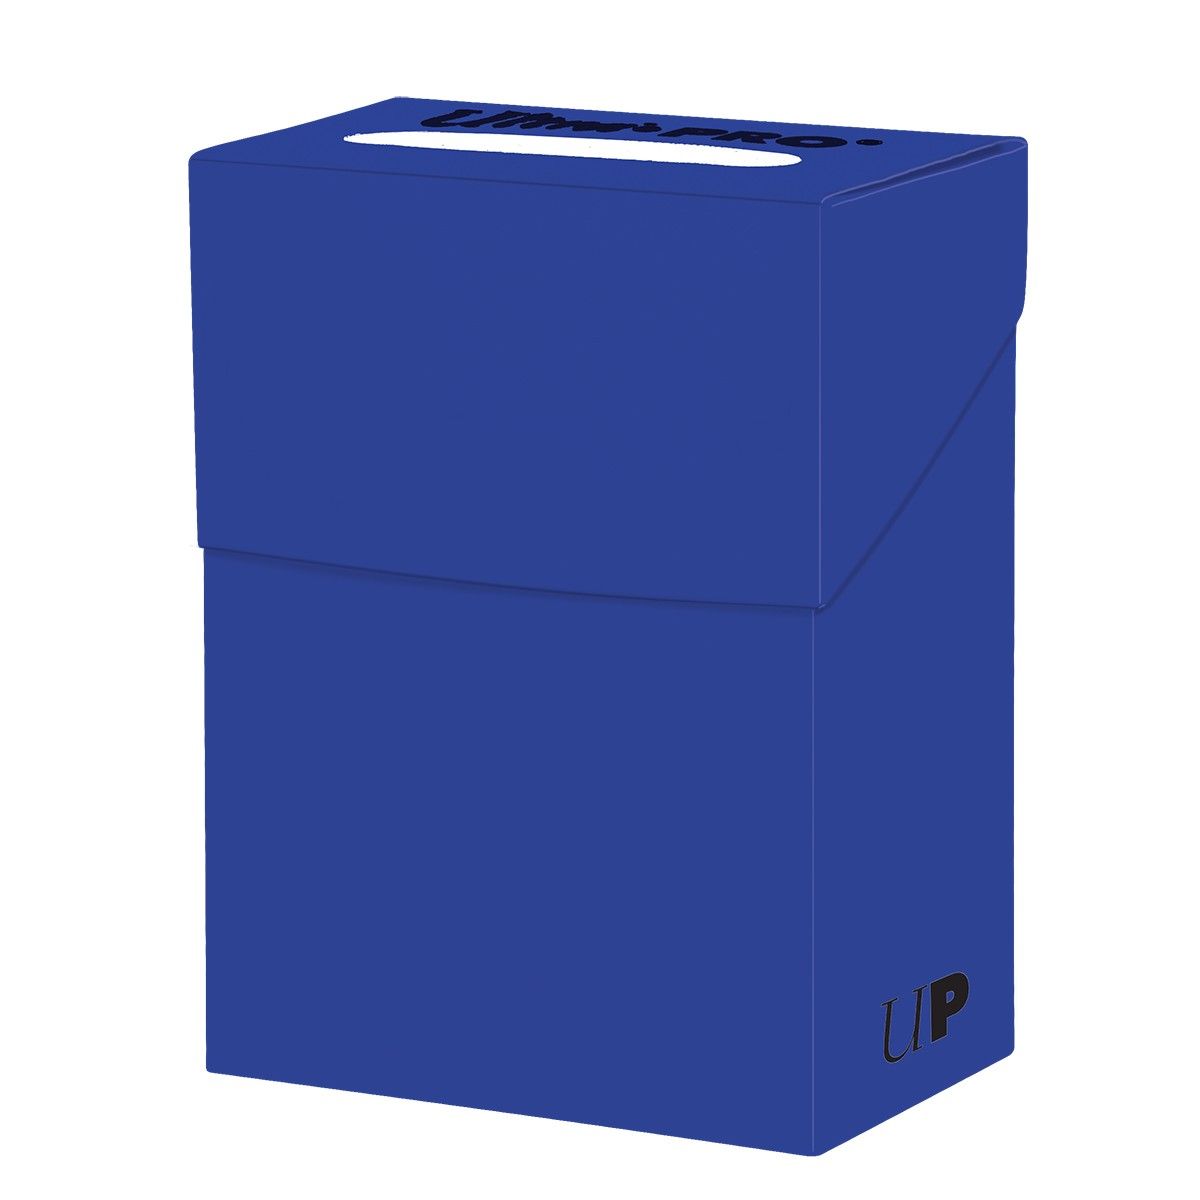 Deckbox Solid – Pazifikblau